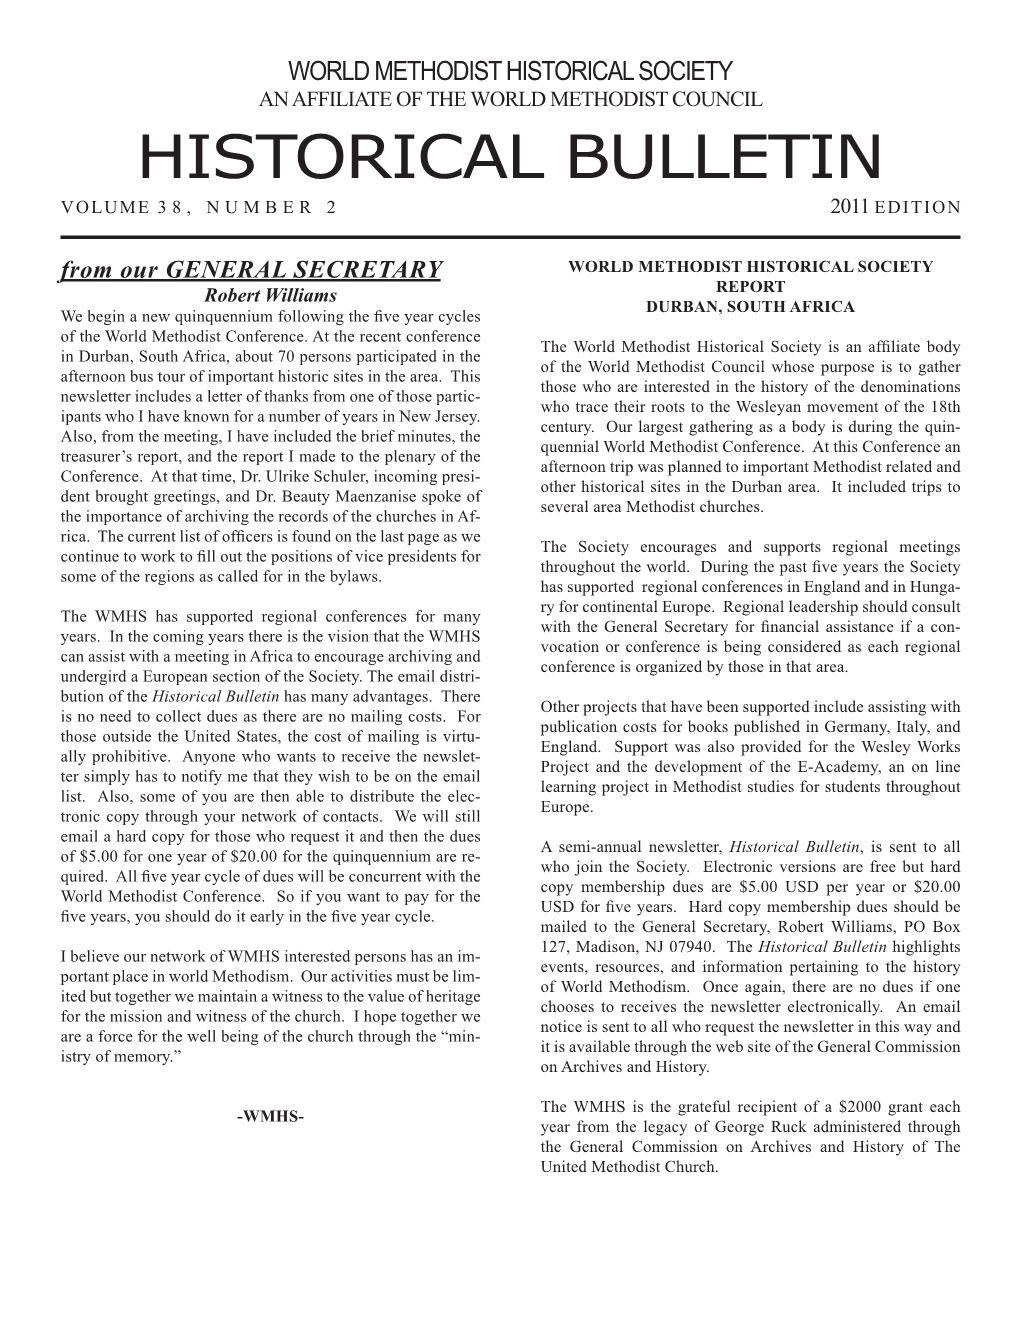 Historical Bulletin